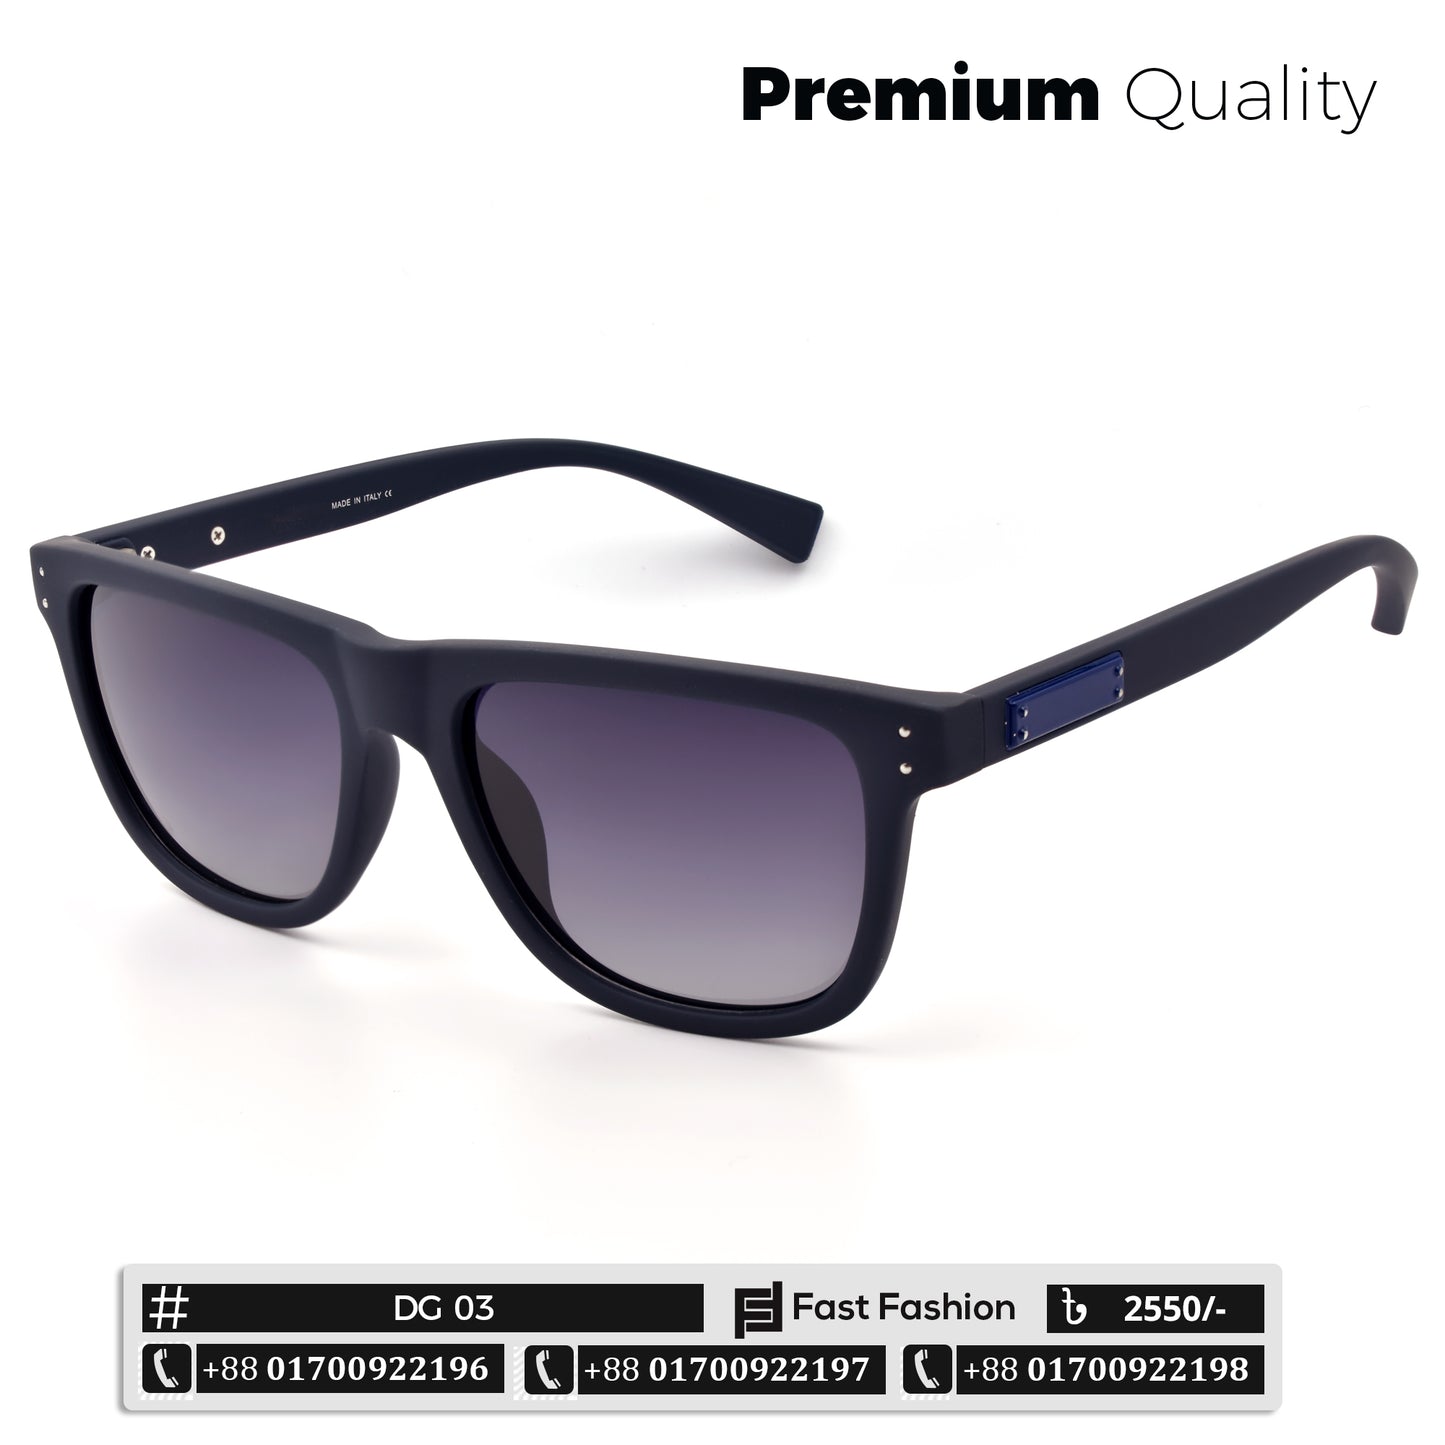 Premium Quality DG Sunglass Exclusive Edition | DG 03 | Premium Quality